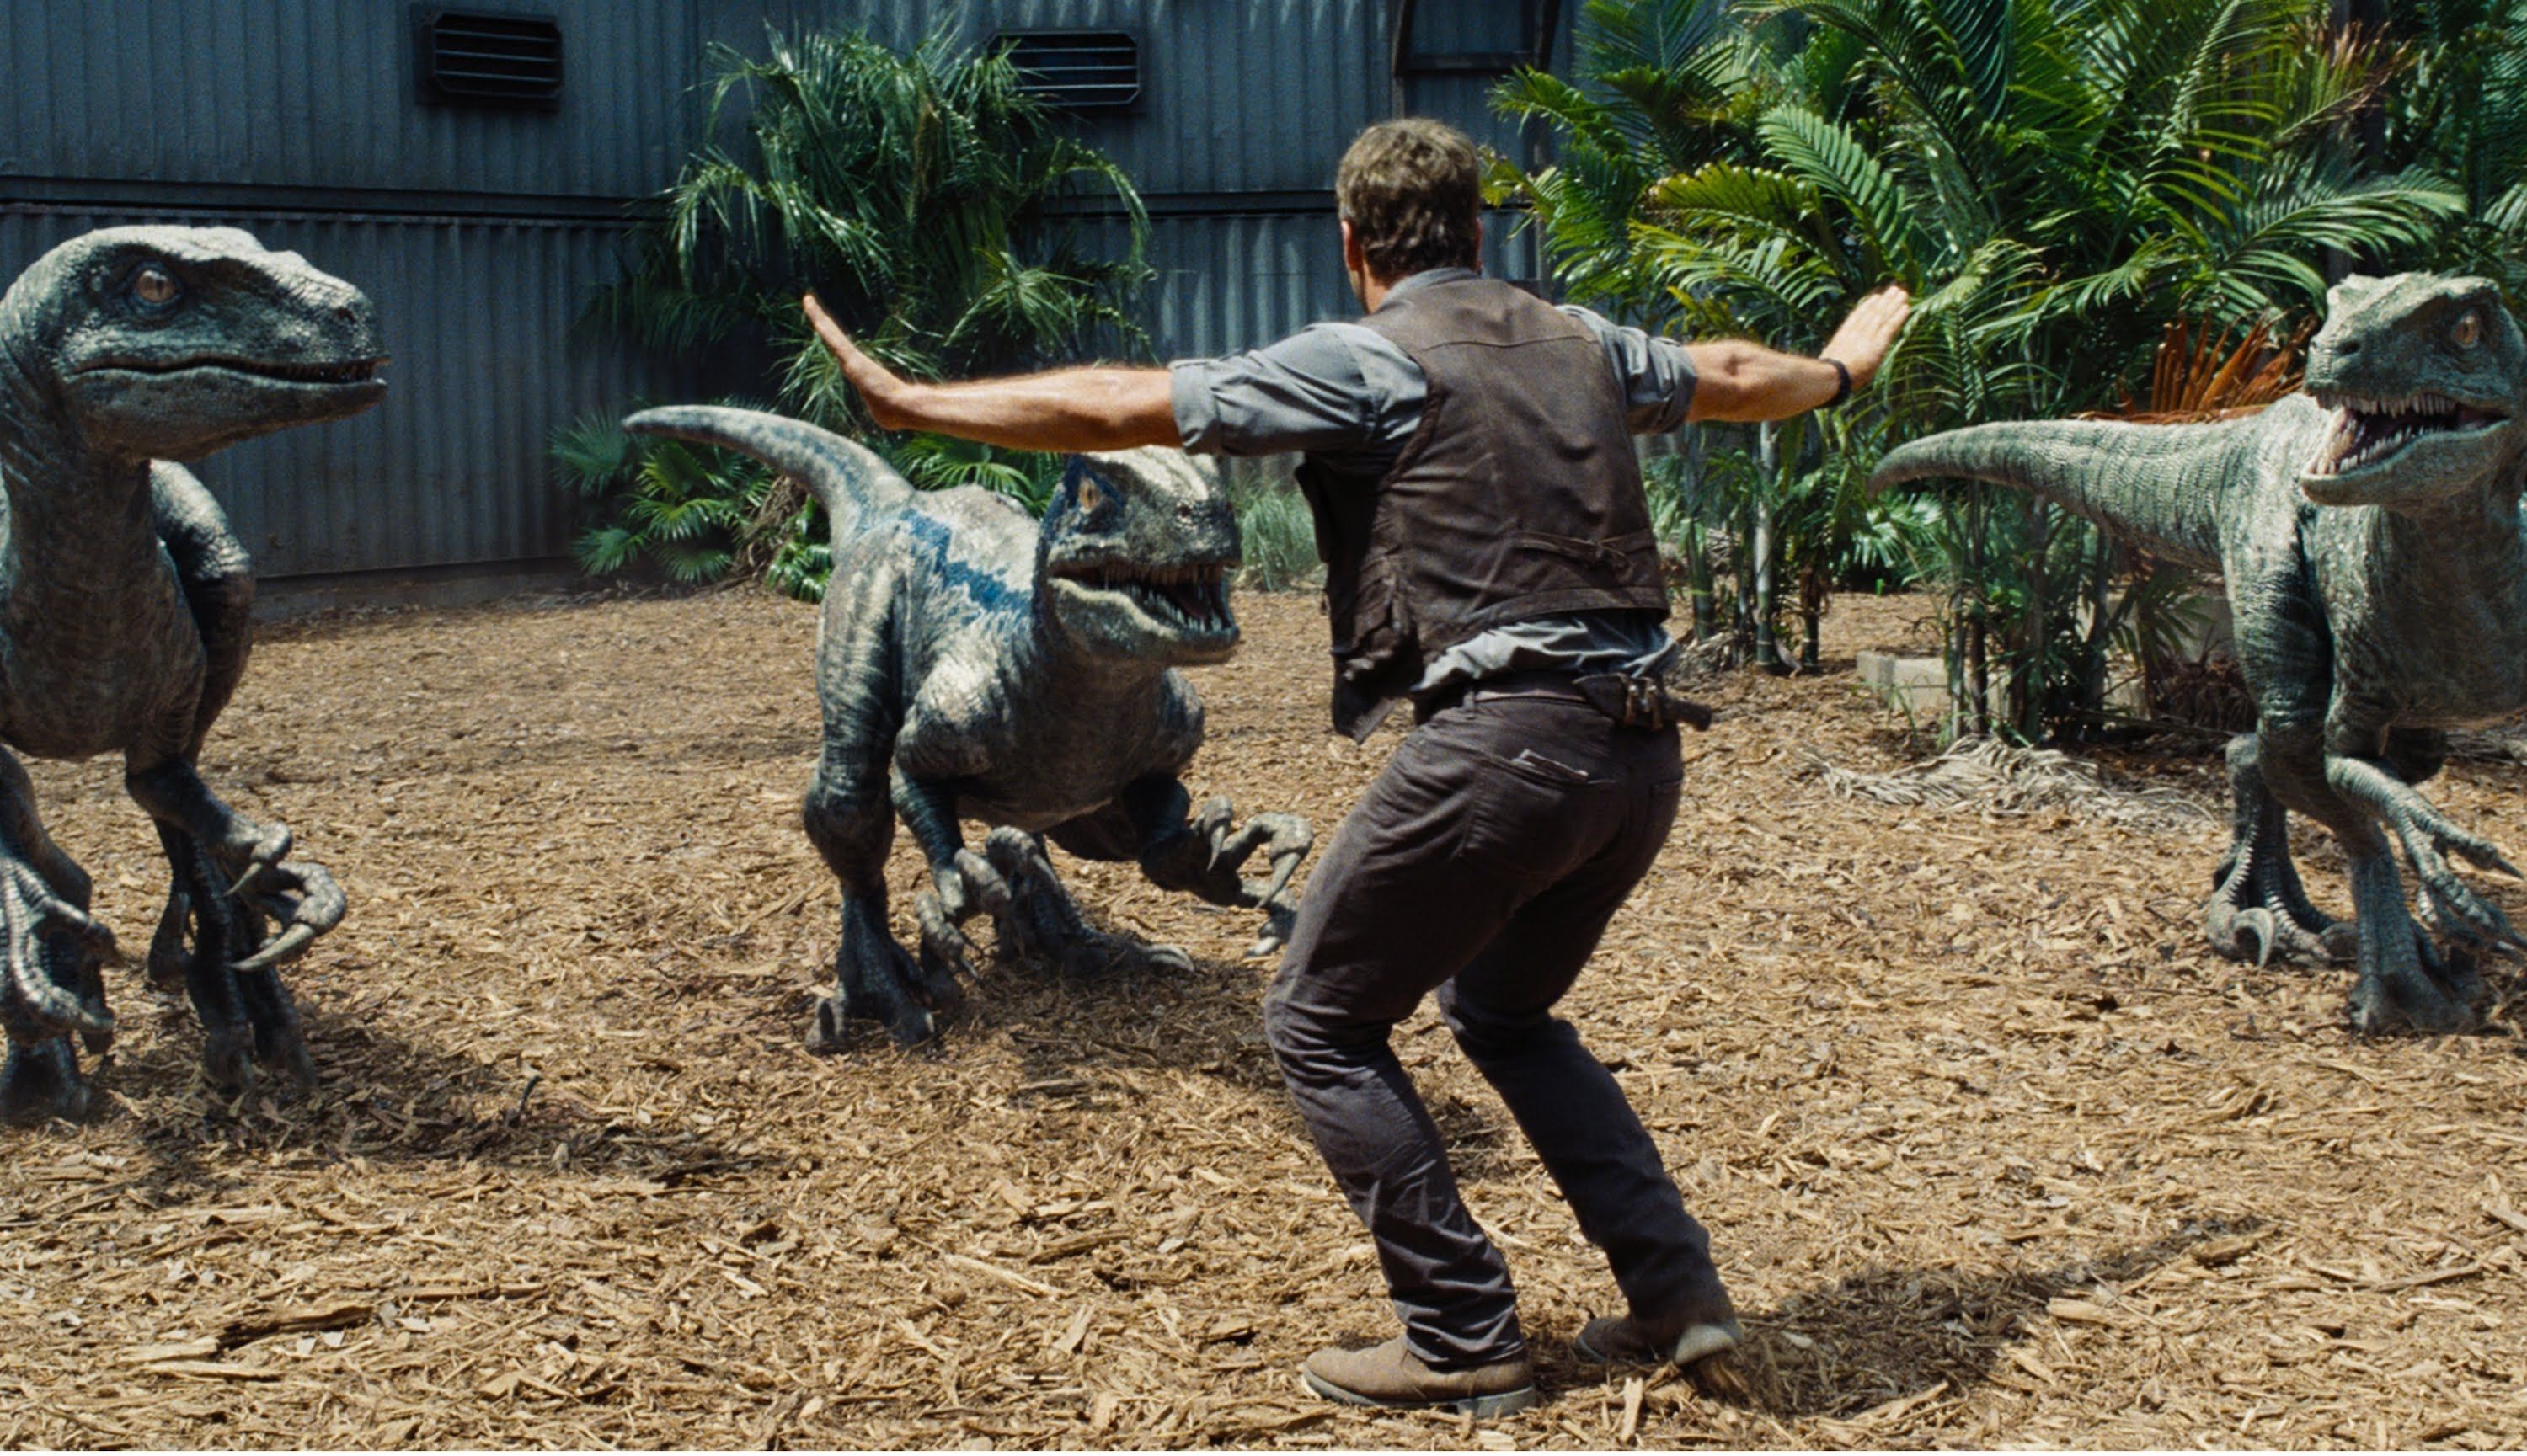 Фільм дня. "Світ Юрського періоду" – фантастика про небезпечні розваги в парку з динозаврами